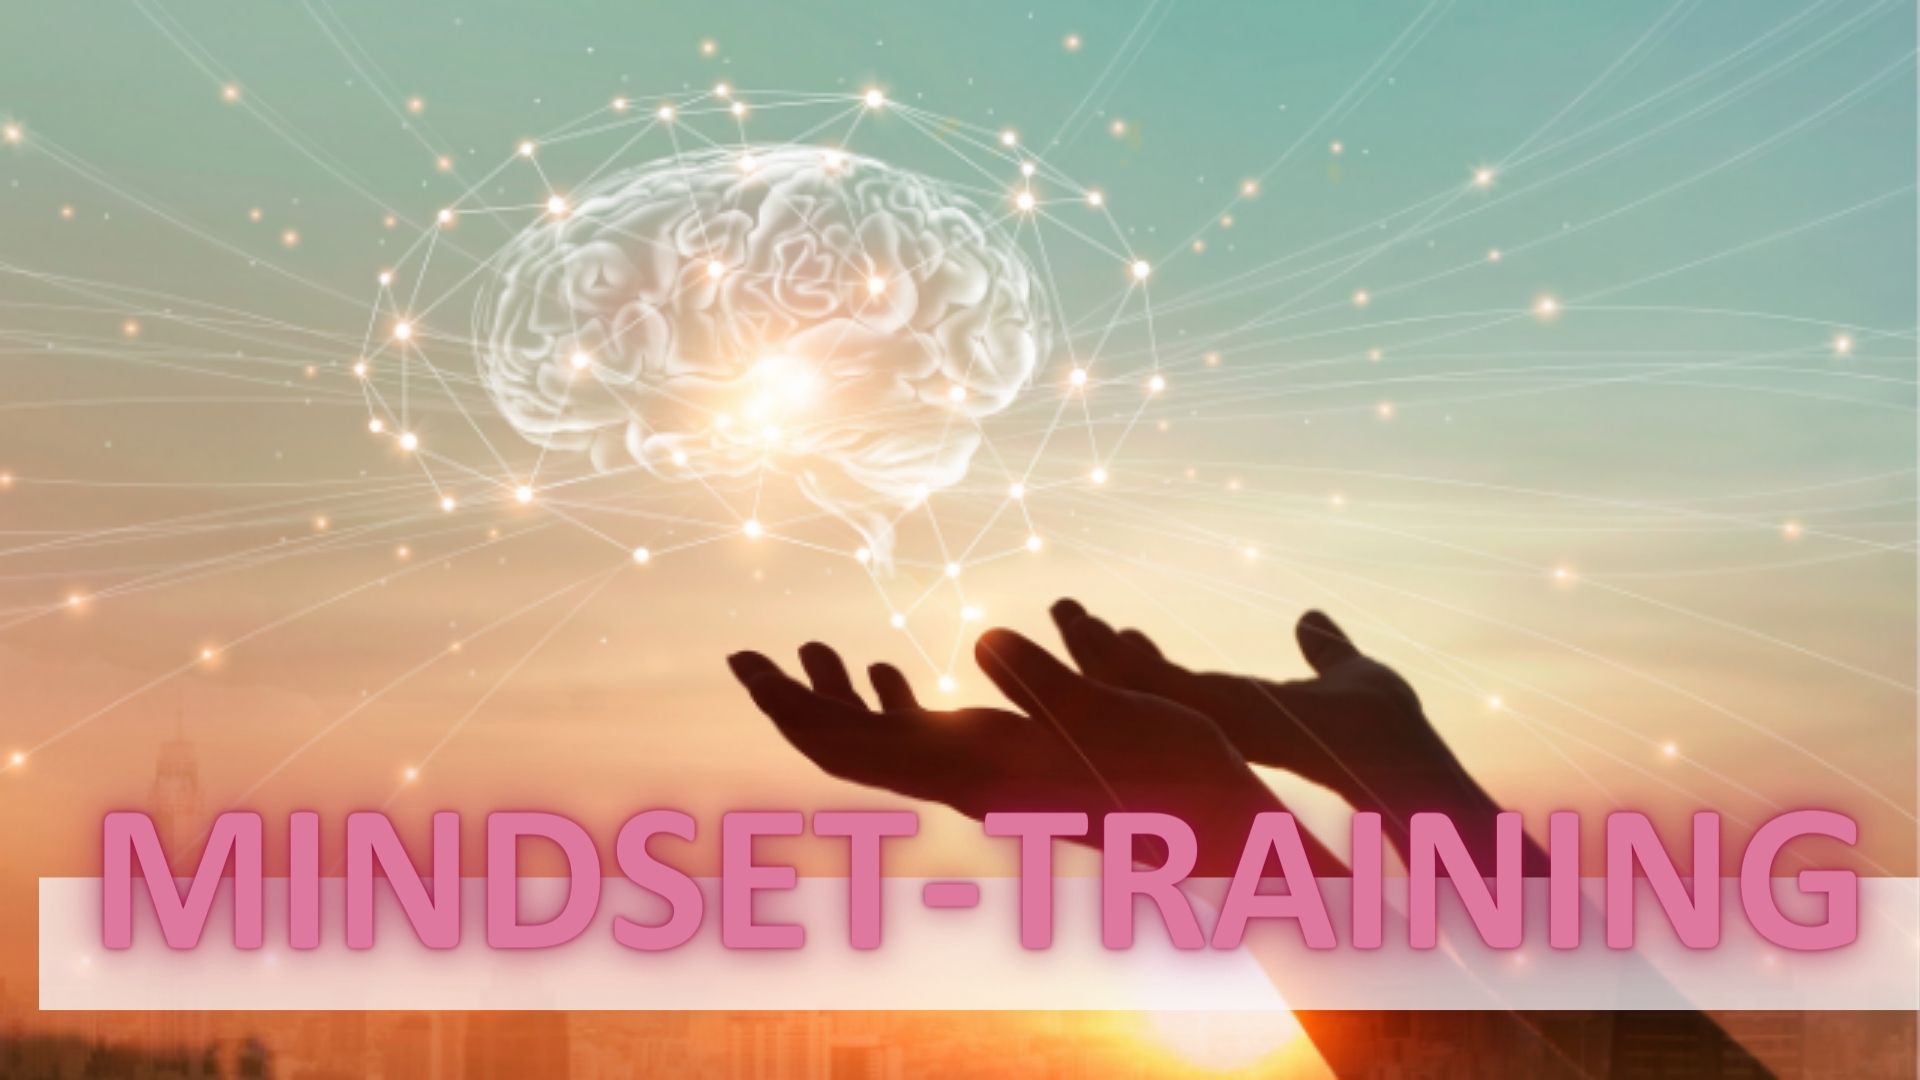 Mandy Pohl Community - Mindset Training